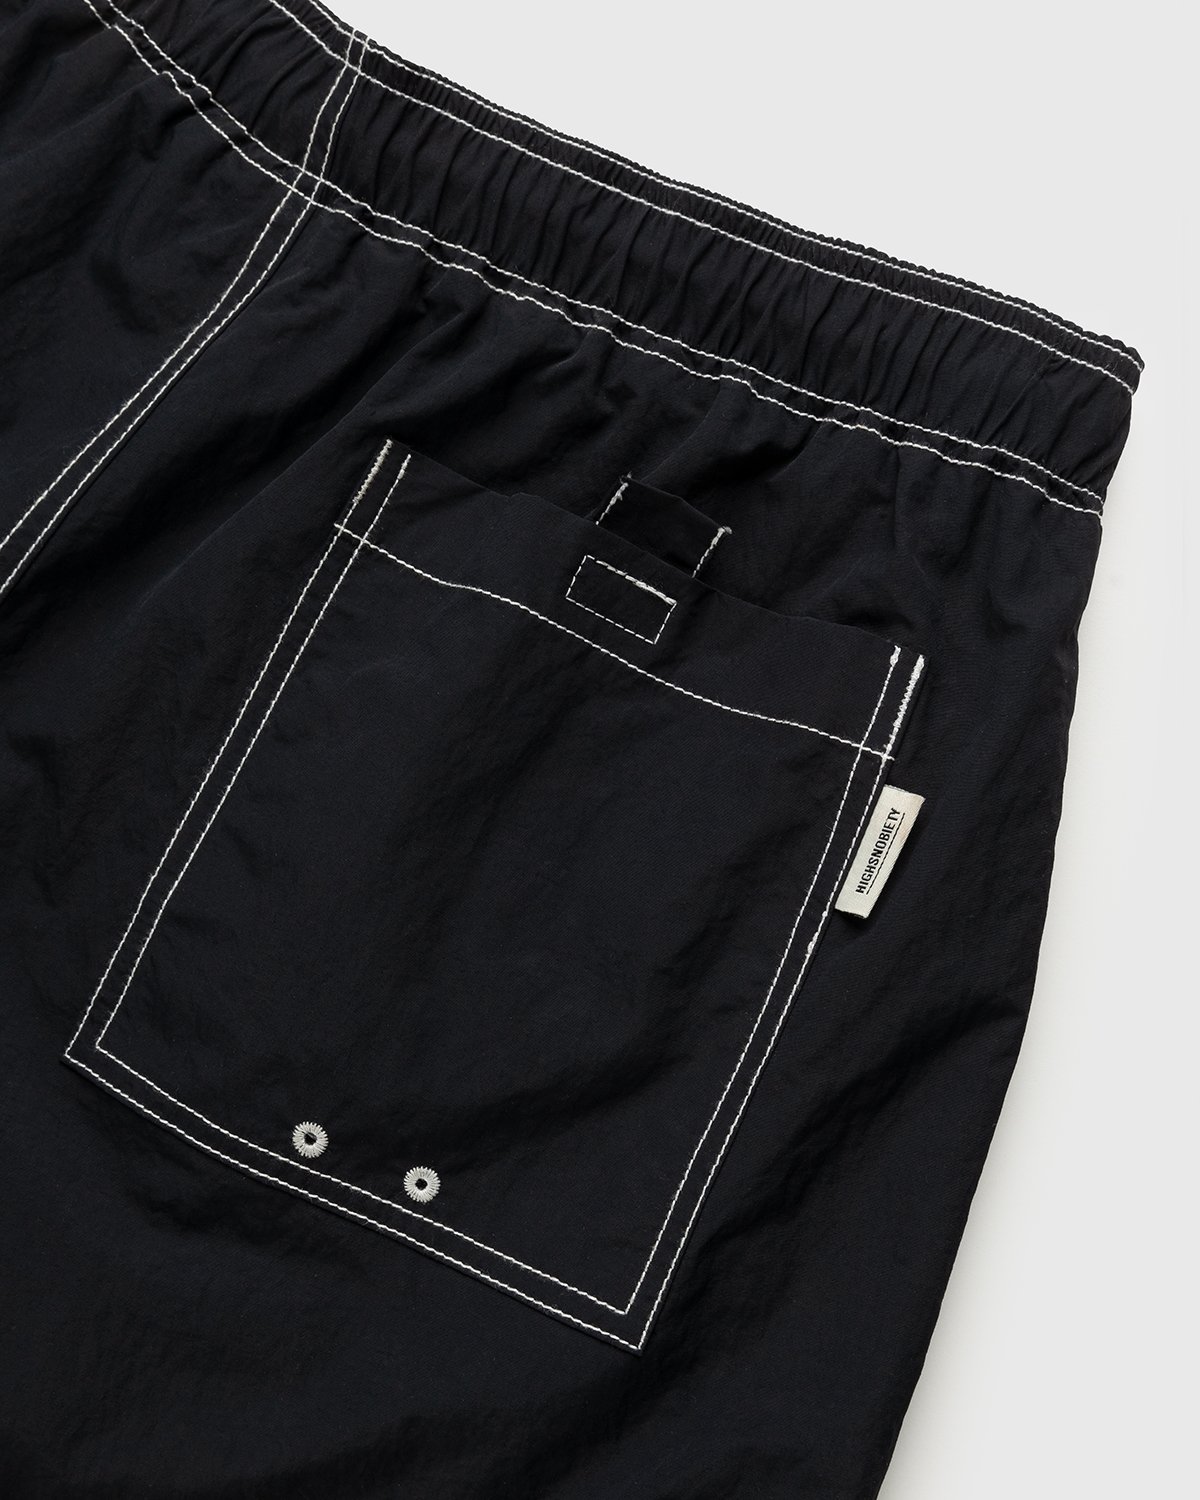 Highsnobiety - Contrast Brushed Nylon Water Shorts Black - Clothing - Black - Image 3